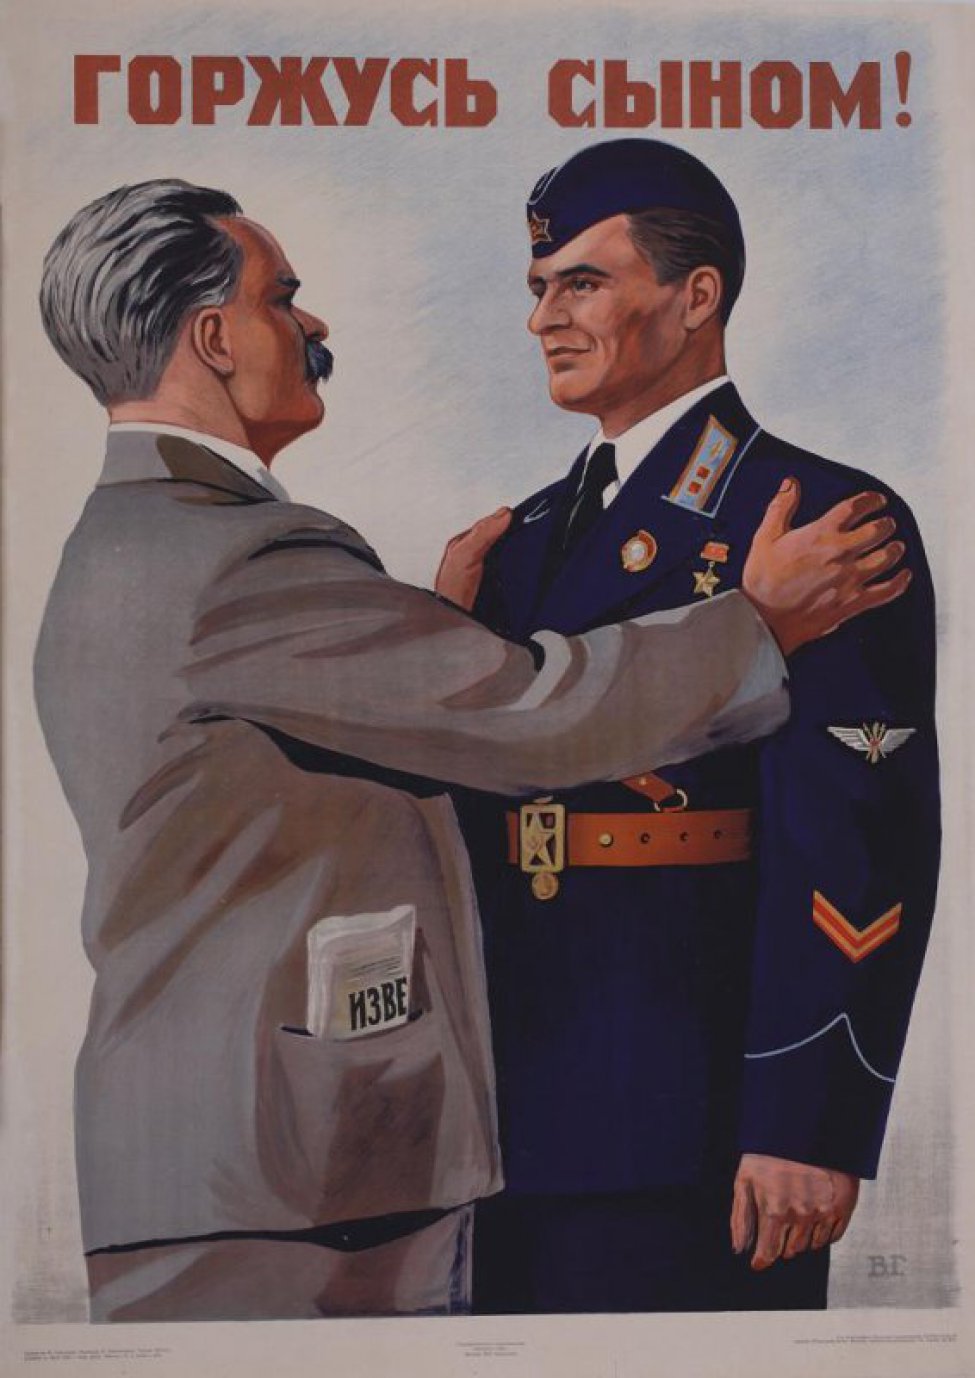 Изображен мужчина средних лет, положивший обе руки на плечи летчику- лейтенанту с орденом "золотой звезды" на груди.